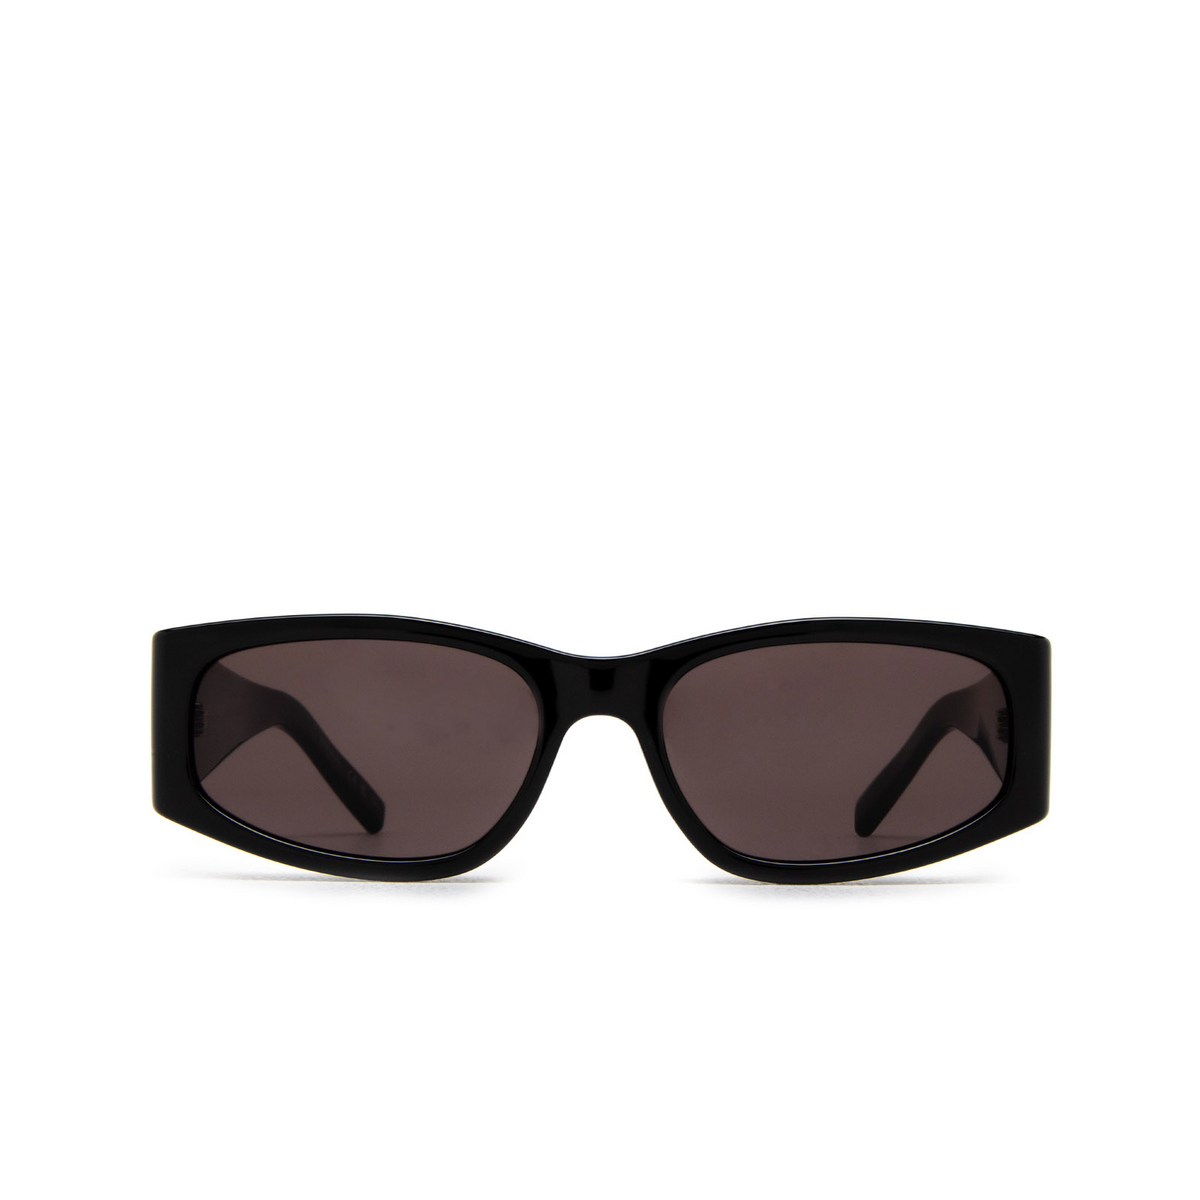 Saint Laurent SL 329 Sunglasses 001 Black - front view